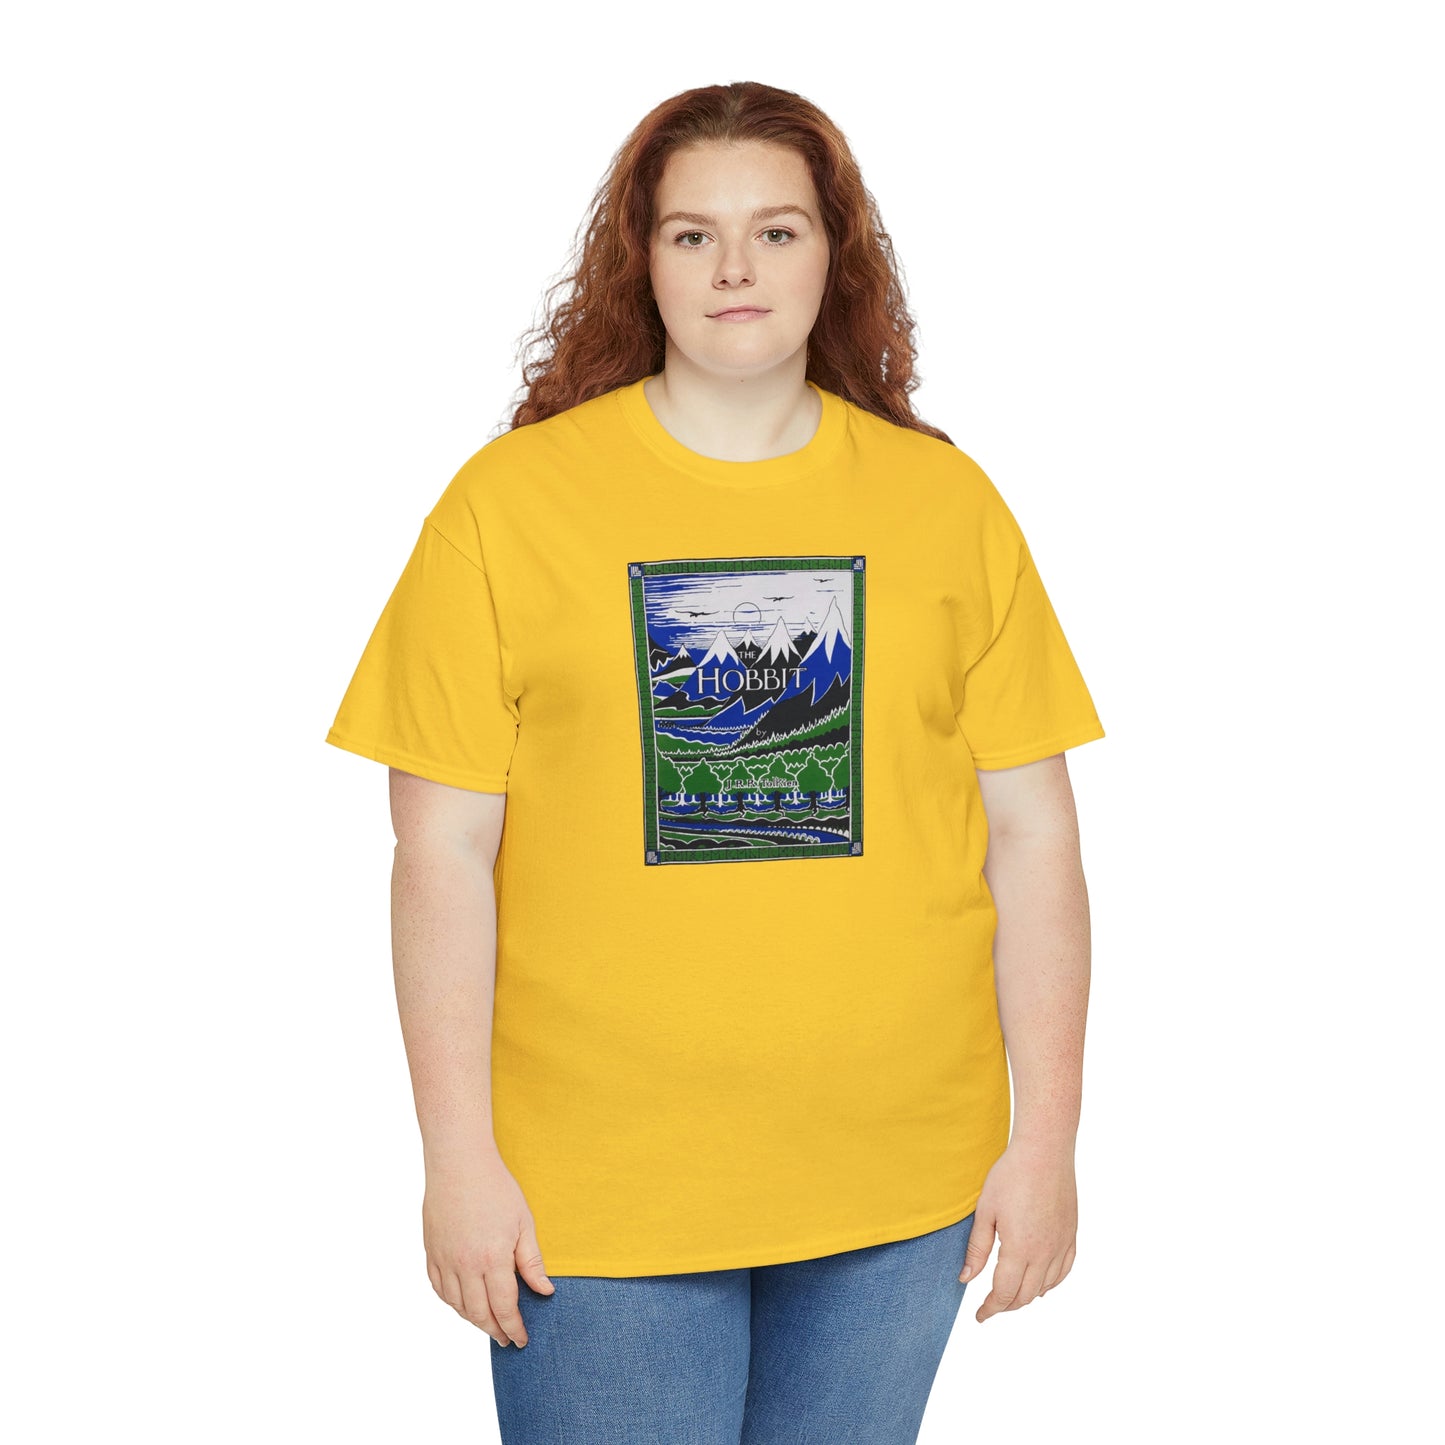 The Hobbit T-Shirt